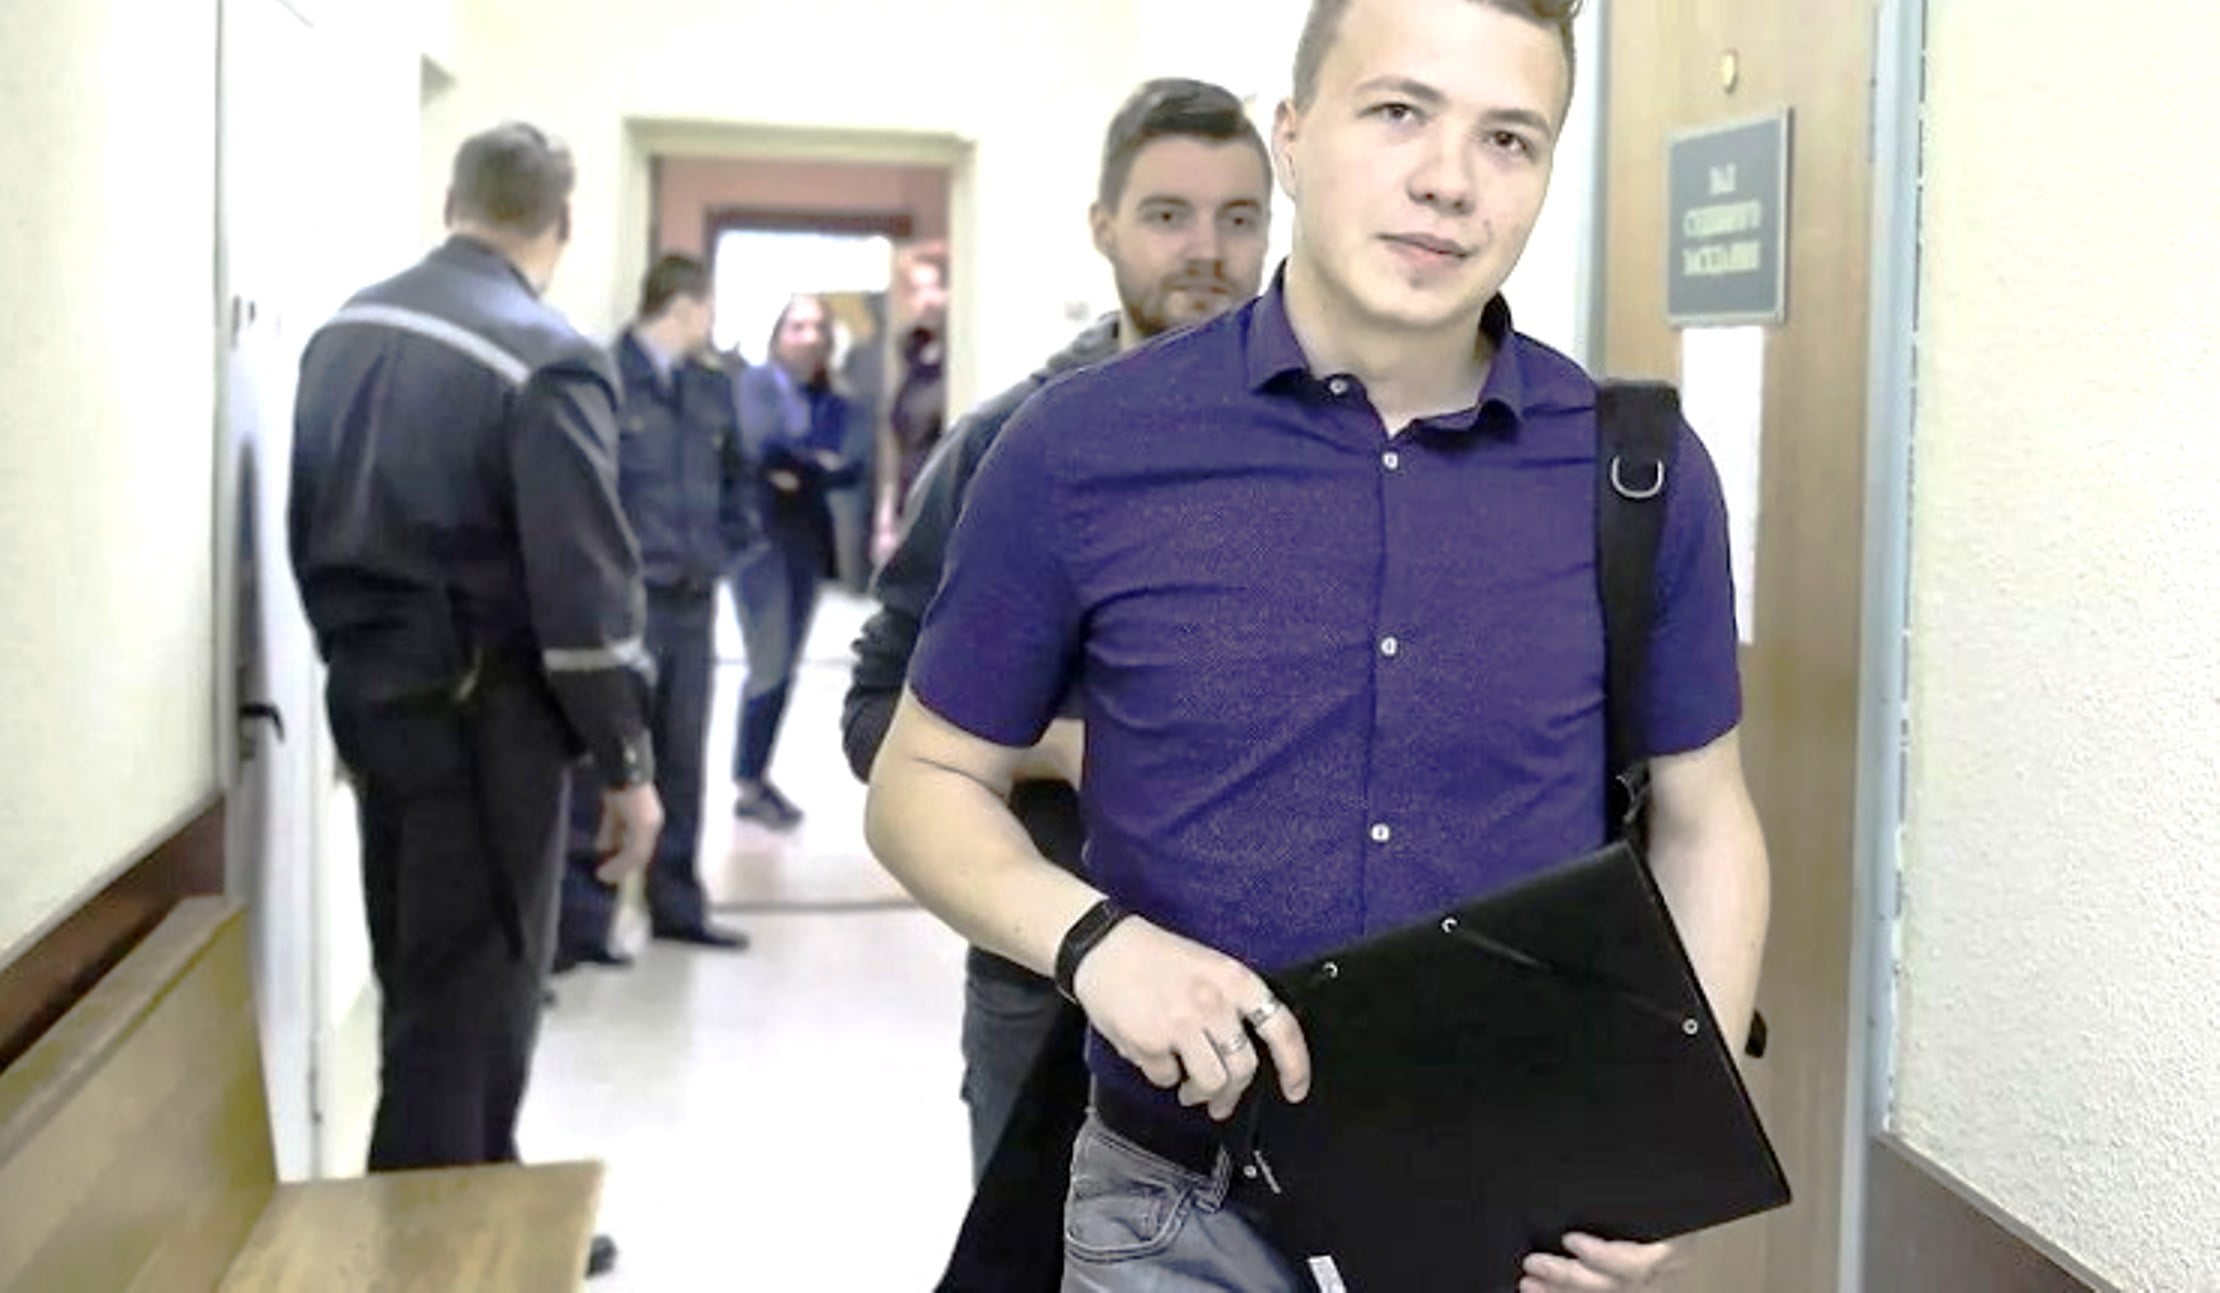 Σύλληψη αντιπάλου στο Μινσκ. Η ατλαντική συντροφία υπερασπίζεται το μονοπώλιο της